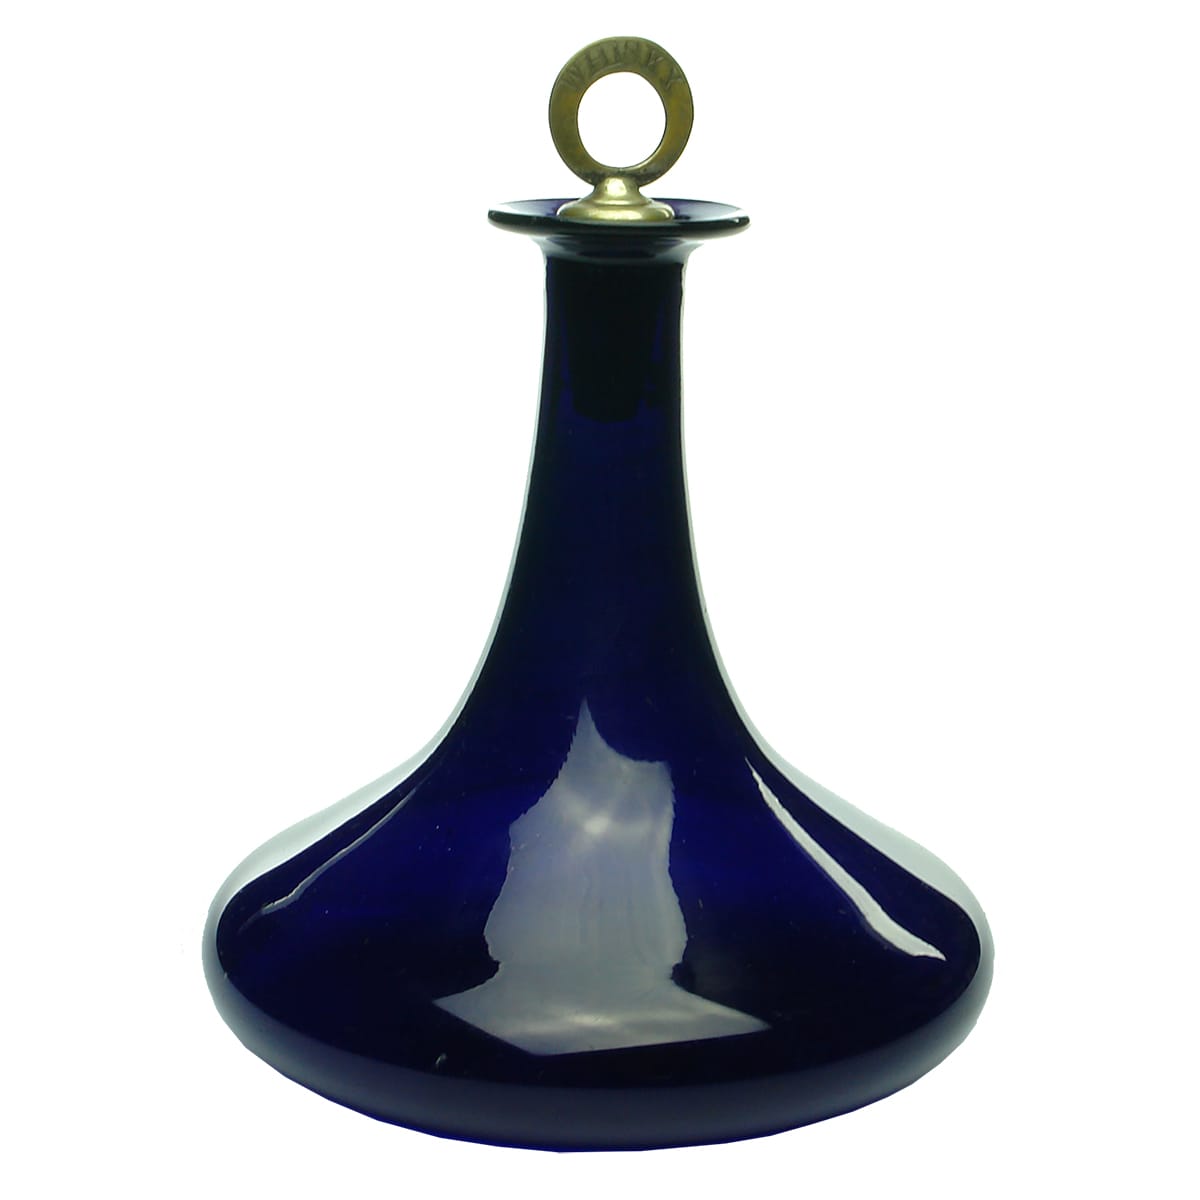 Cobalt Blue glass Carafe or Vase. Polished Pontil. Brass stopper impressed "Whisky".